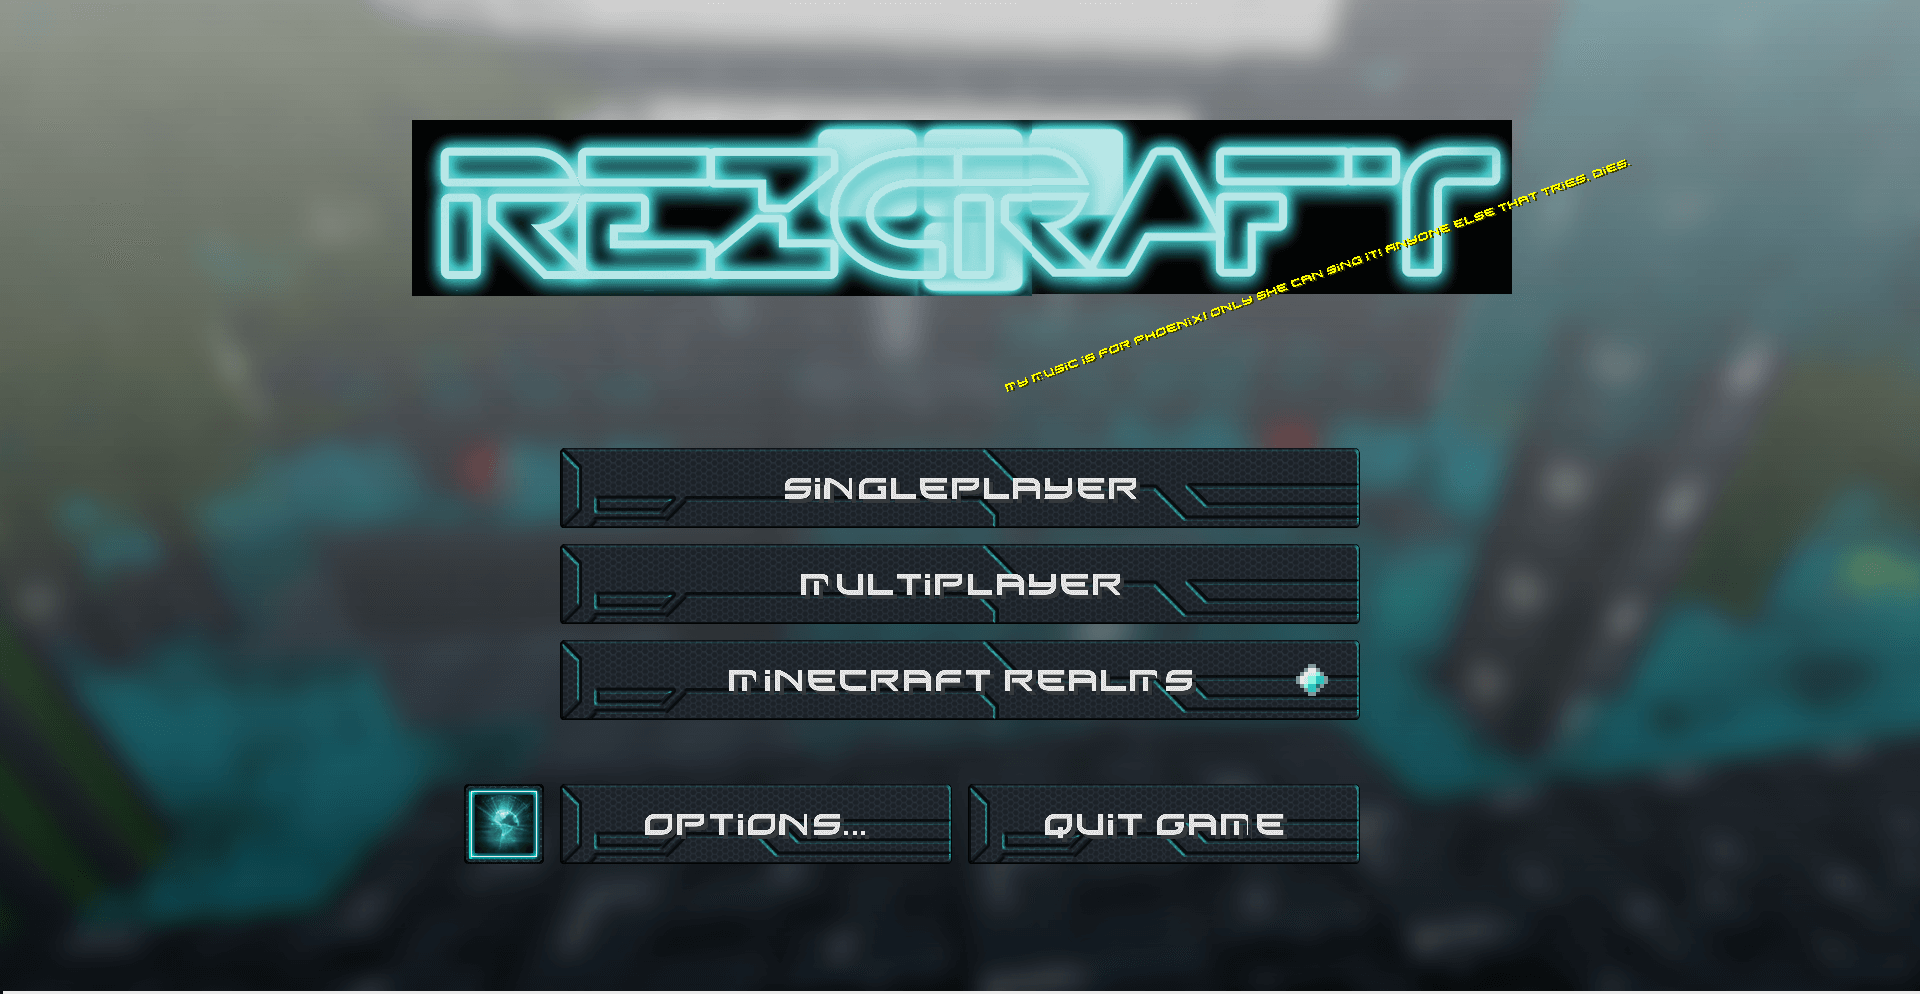 Soulscribe’s Rezcraft скриншот 1